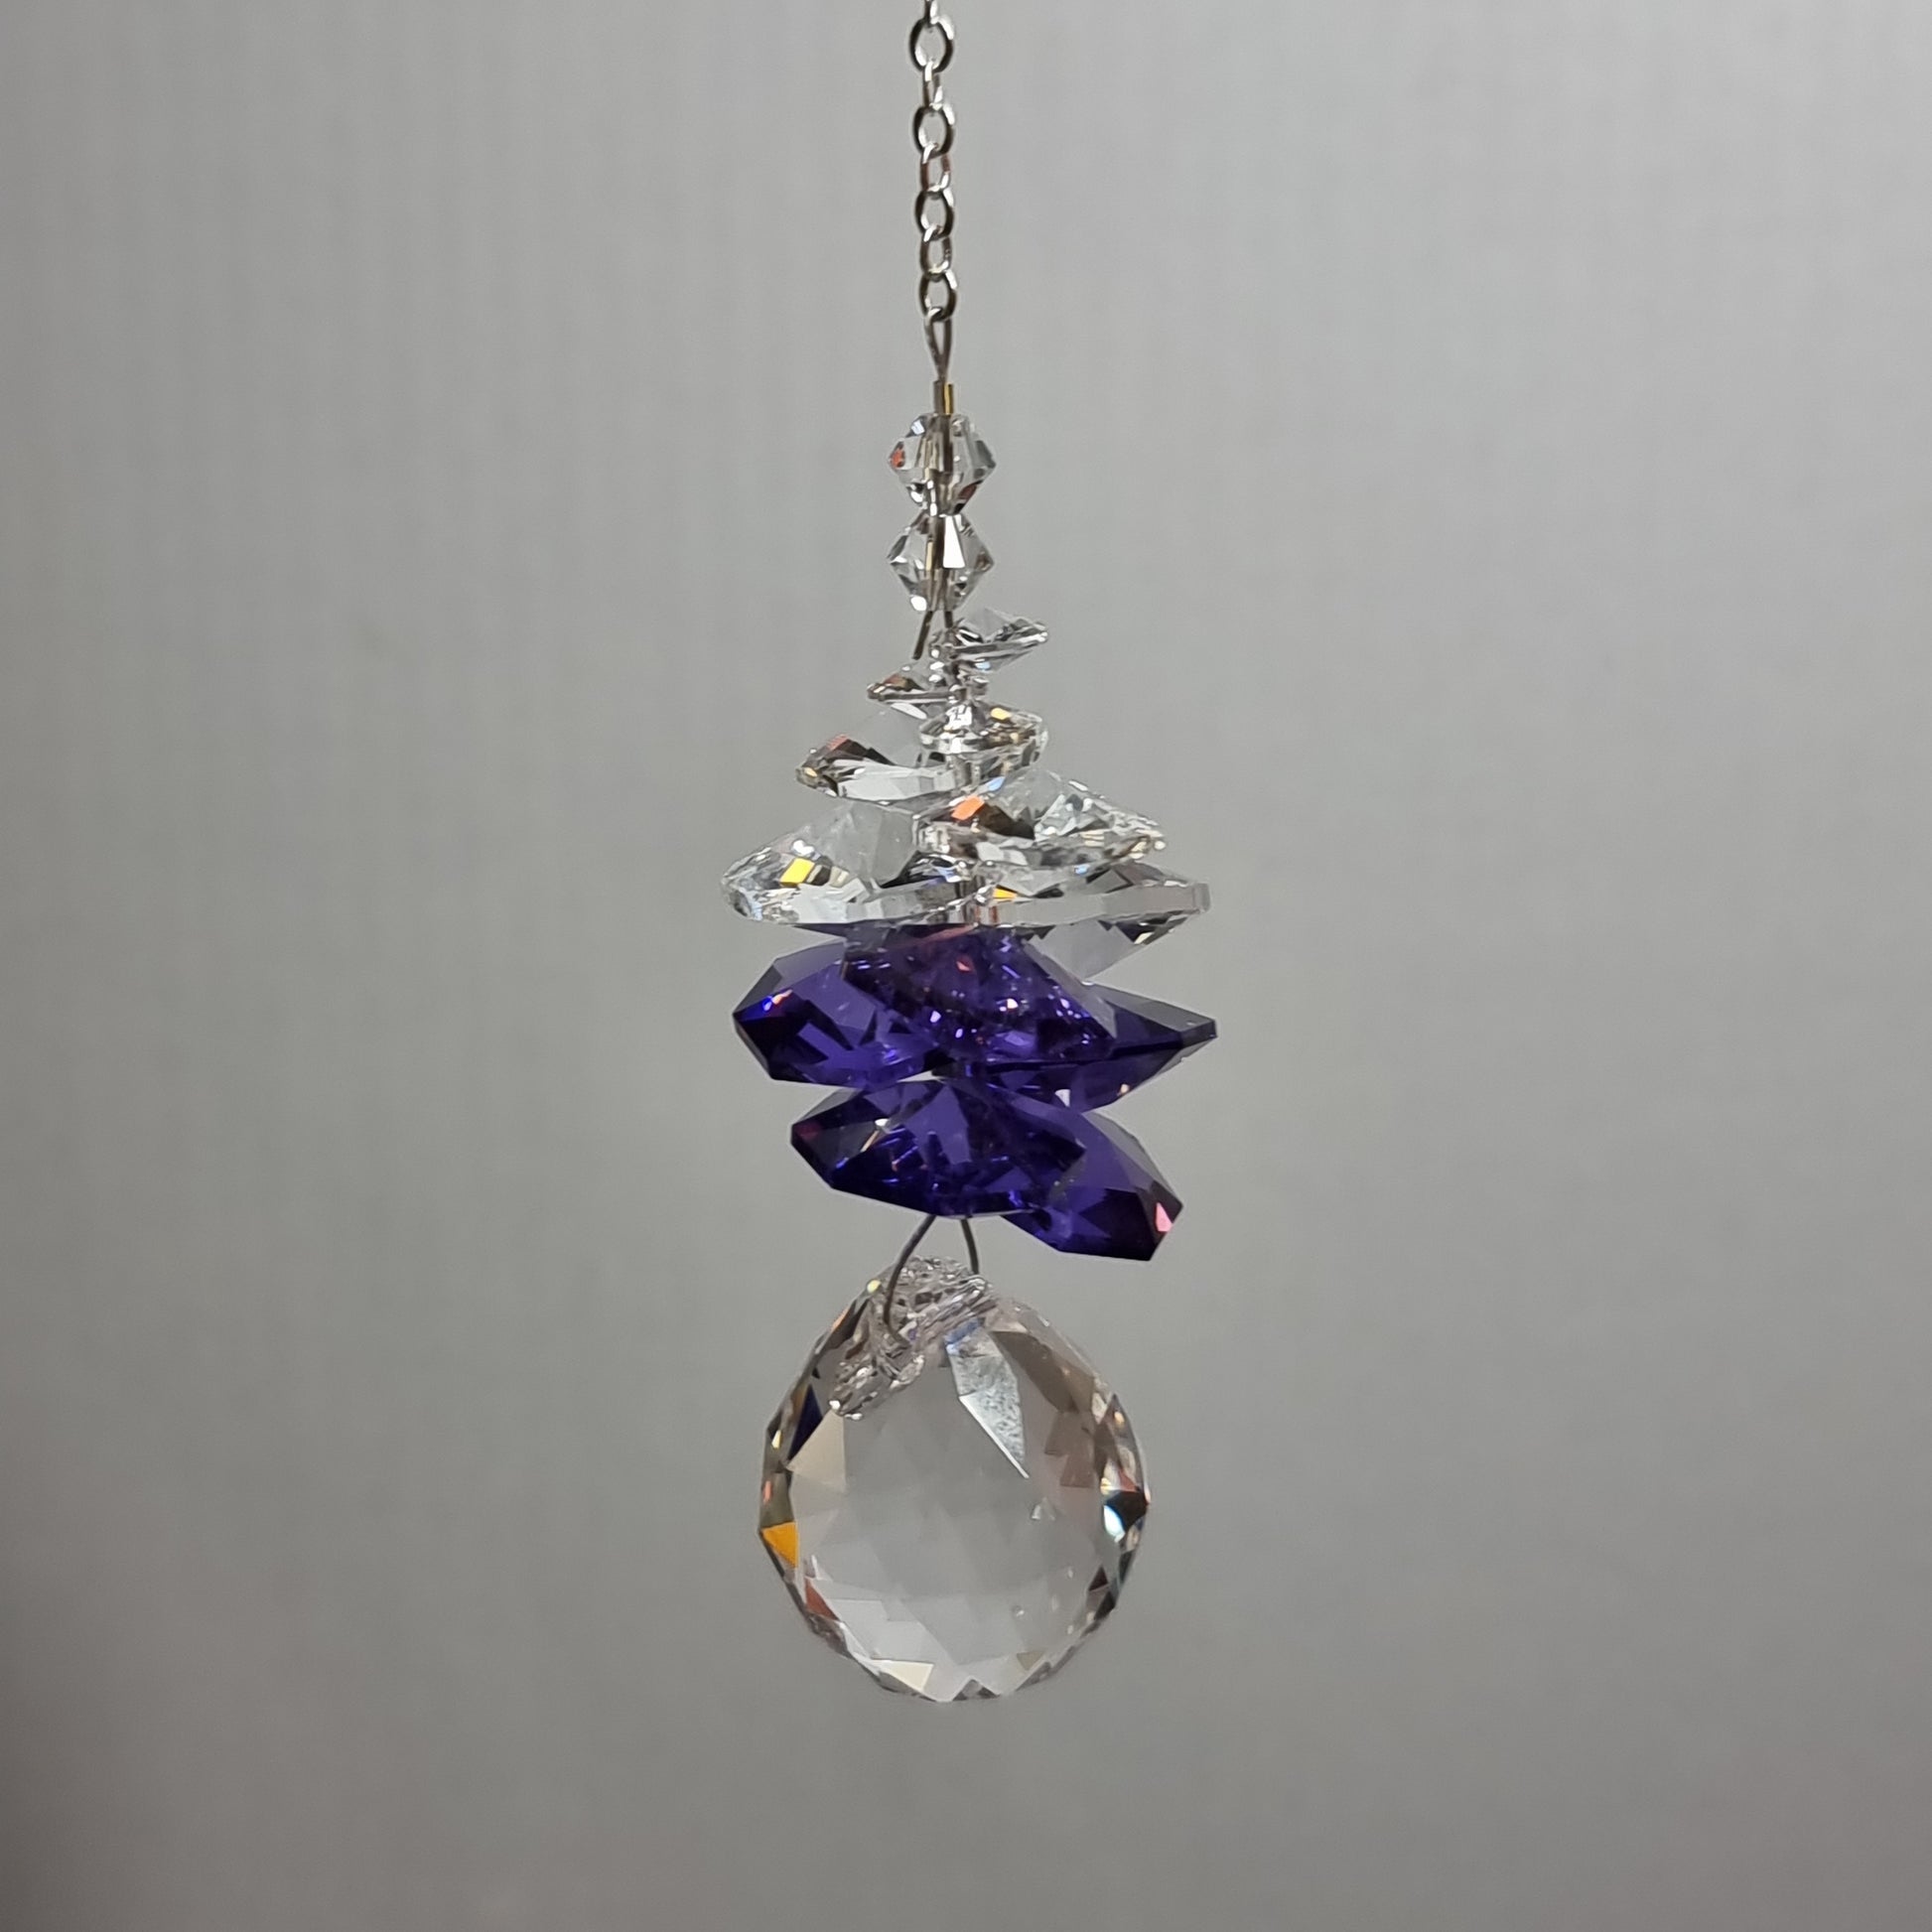 Clarus hanging - blue violet - Rivendell Shop